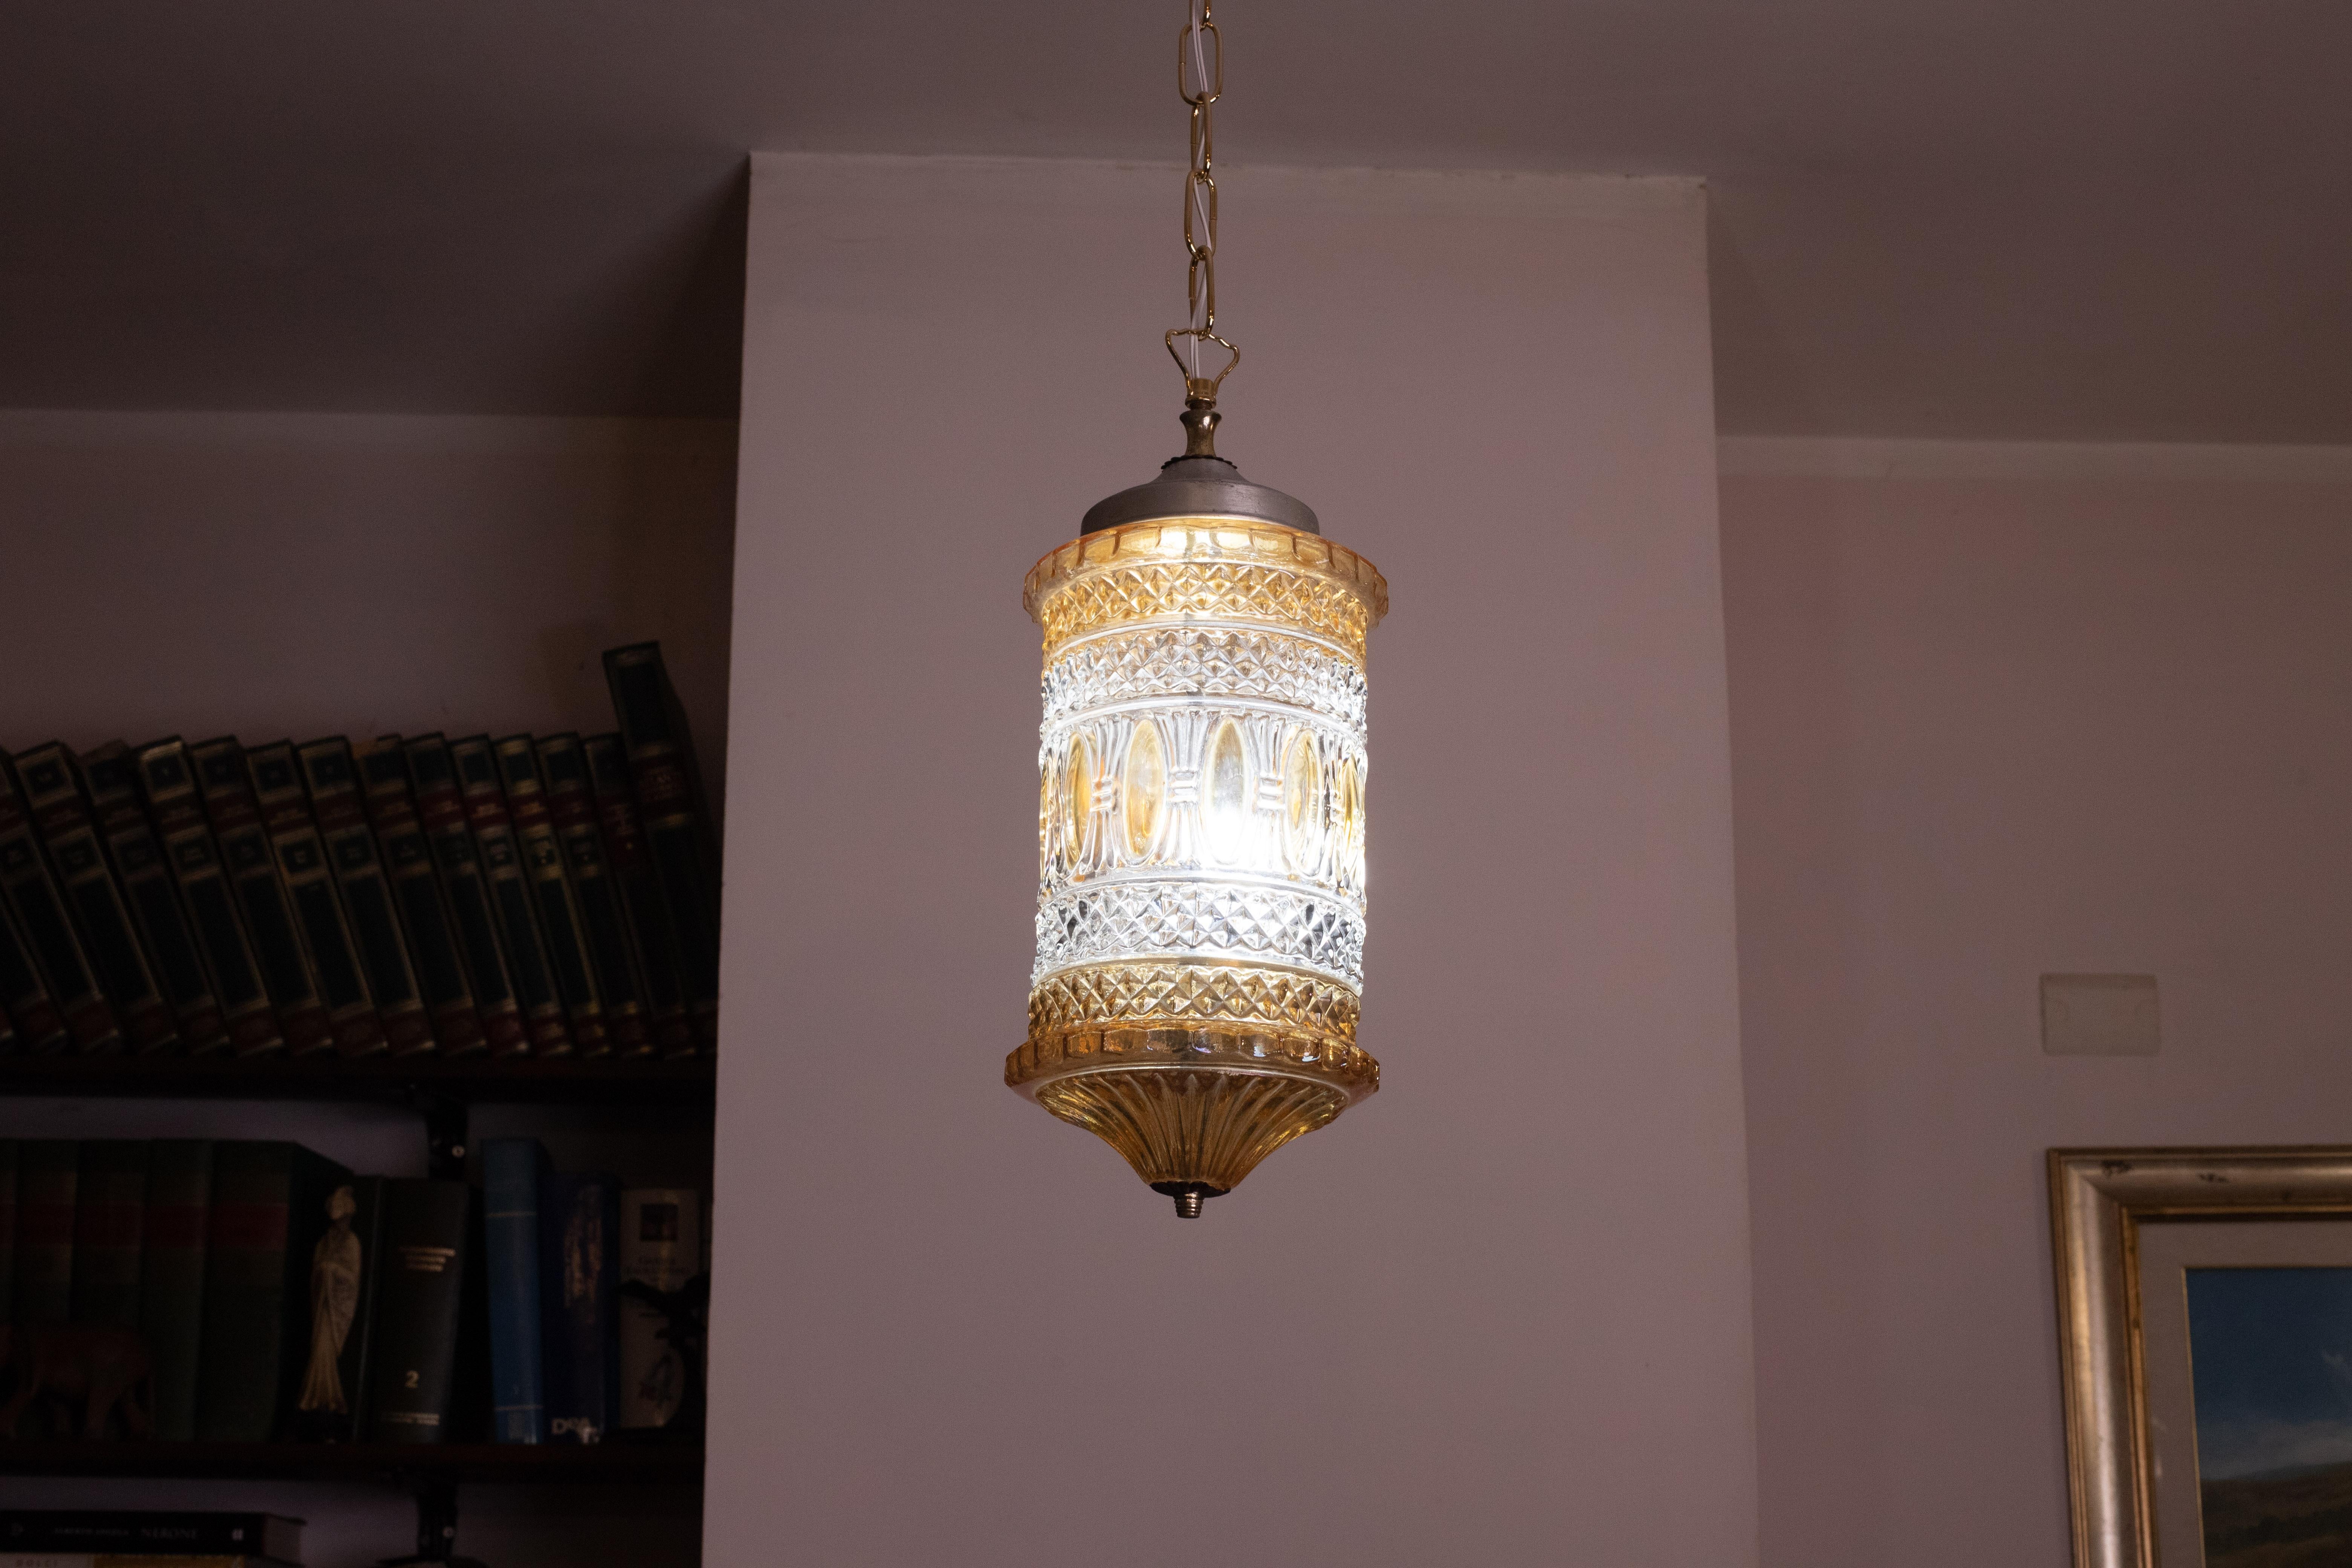 Superbe lanterne en verre de style oriental.

Période d'environ 1960.

La lanterne convient à la décoration d'un petit espace tel qu'un hall d'entrée ou une chambre, la lumière qu'elle diffuse créant une agréable atmosphère chaleureuse.

La lampe